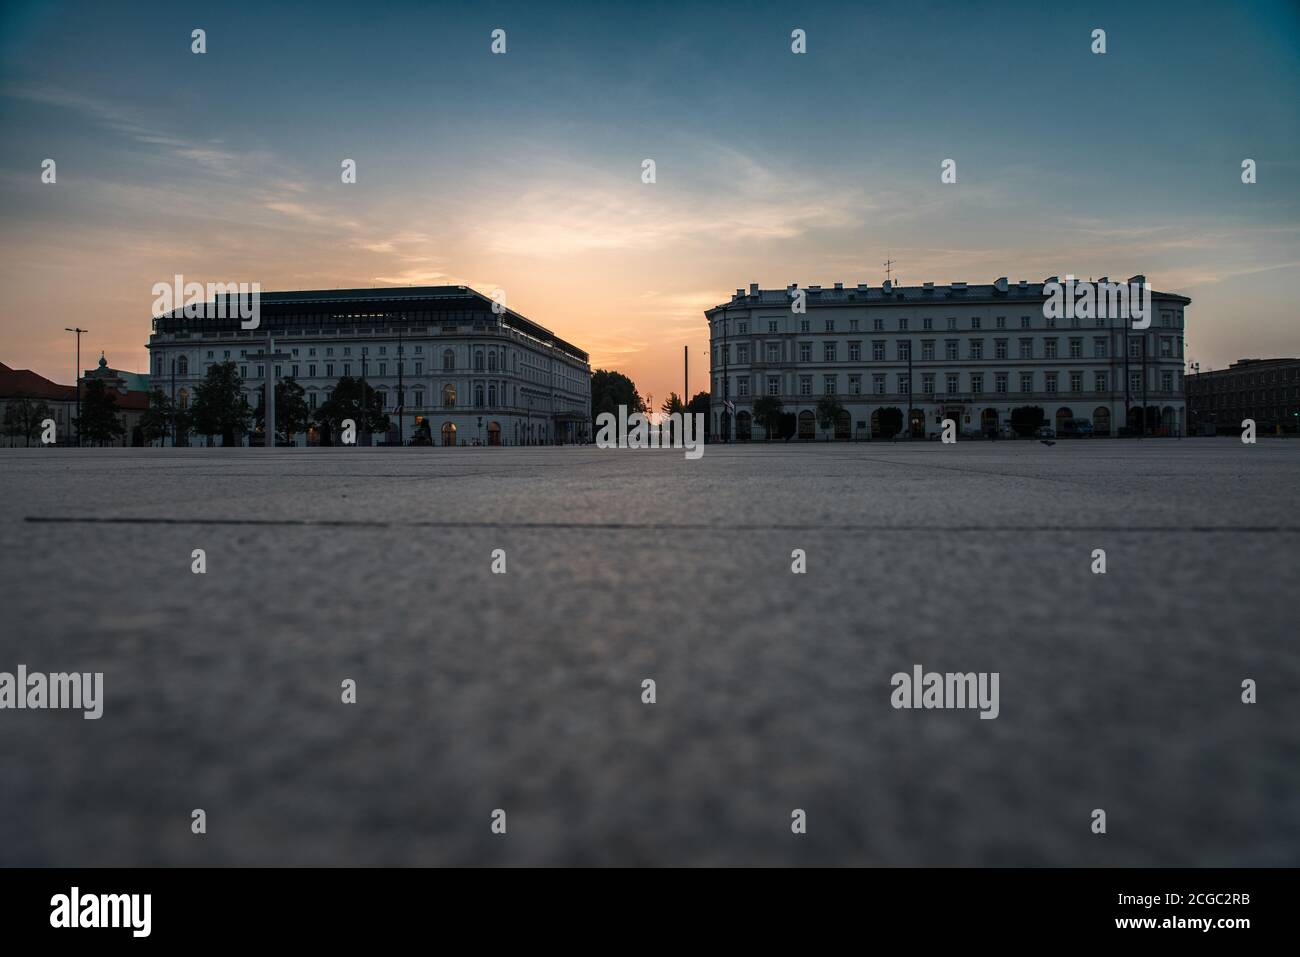 Pi?sudskiego Square, Warsaw, Poland at sunrise. Stock Photo